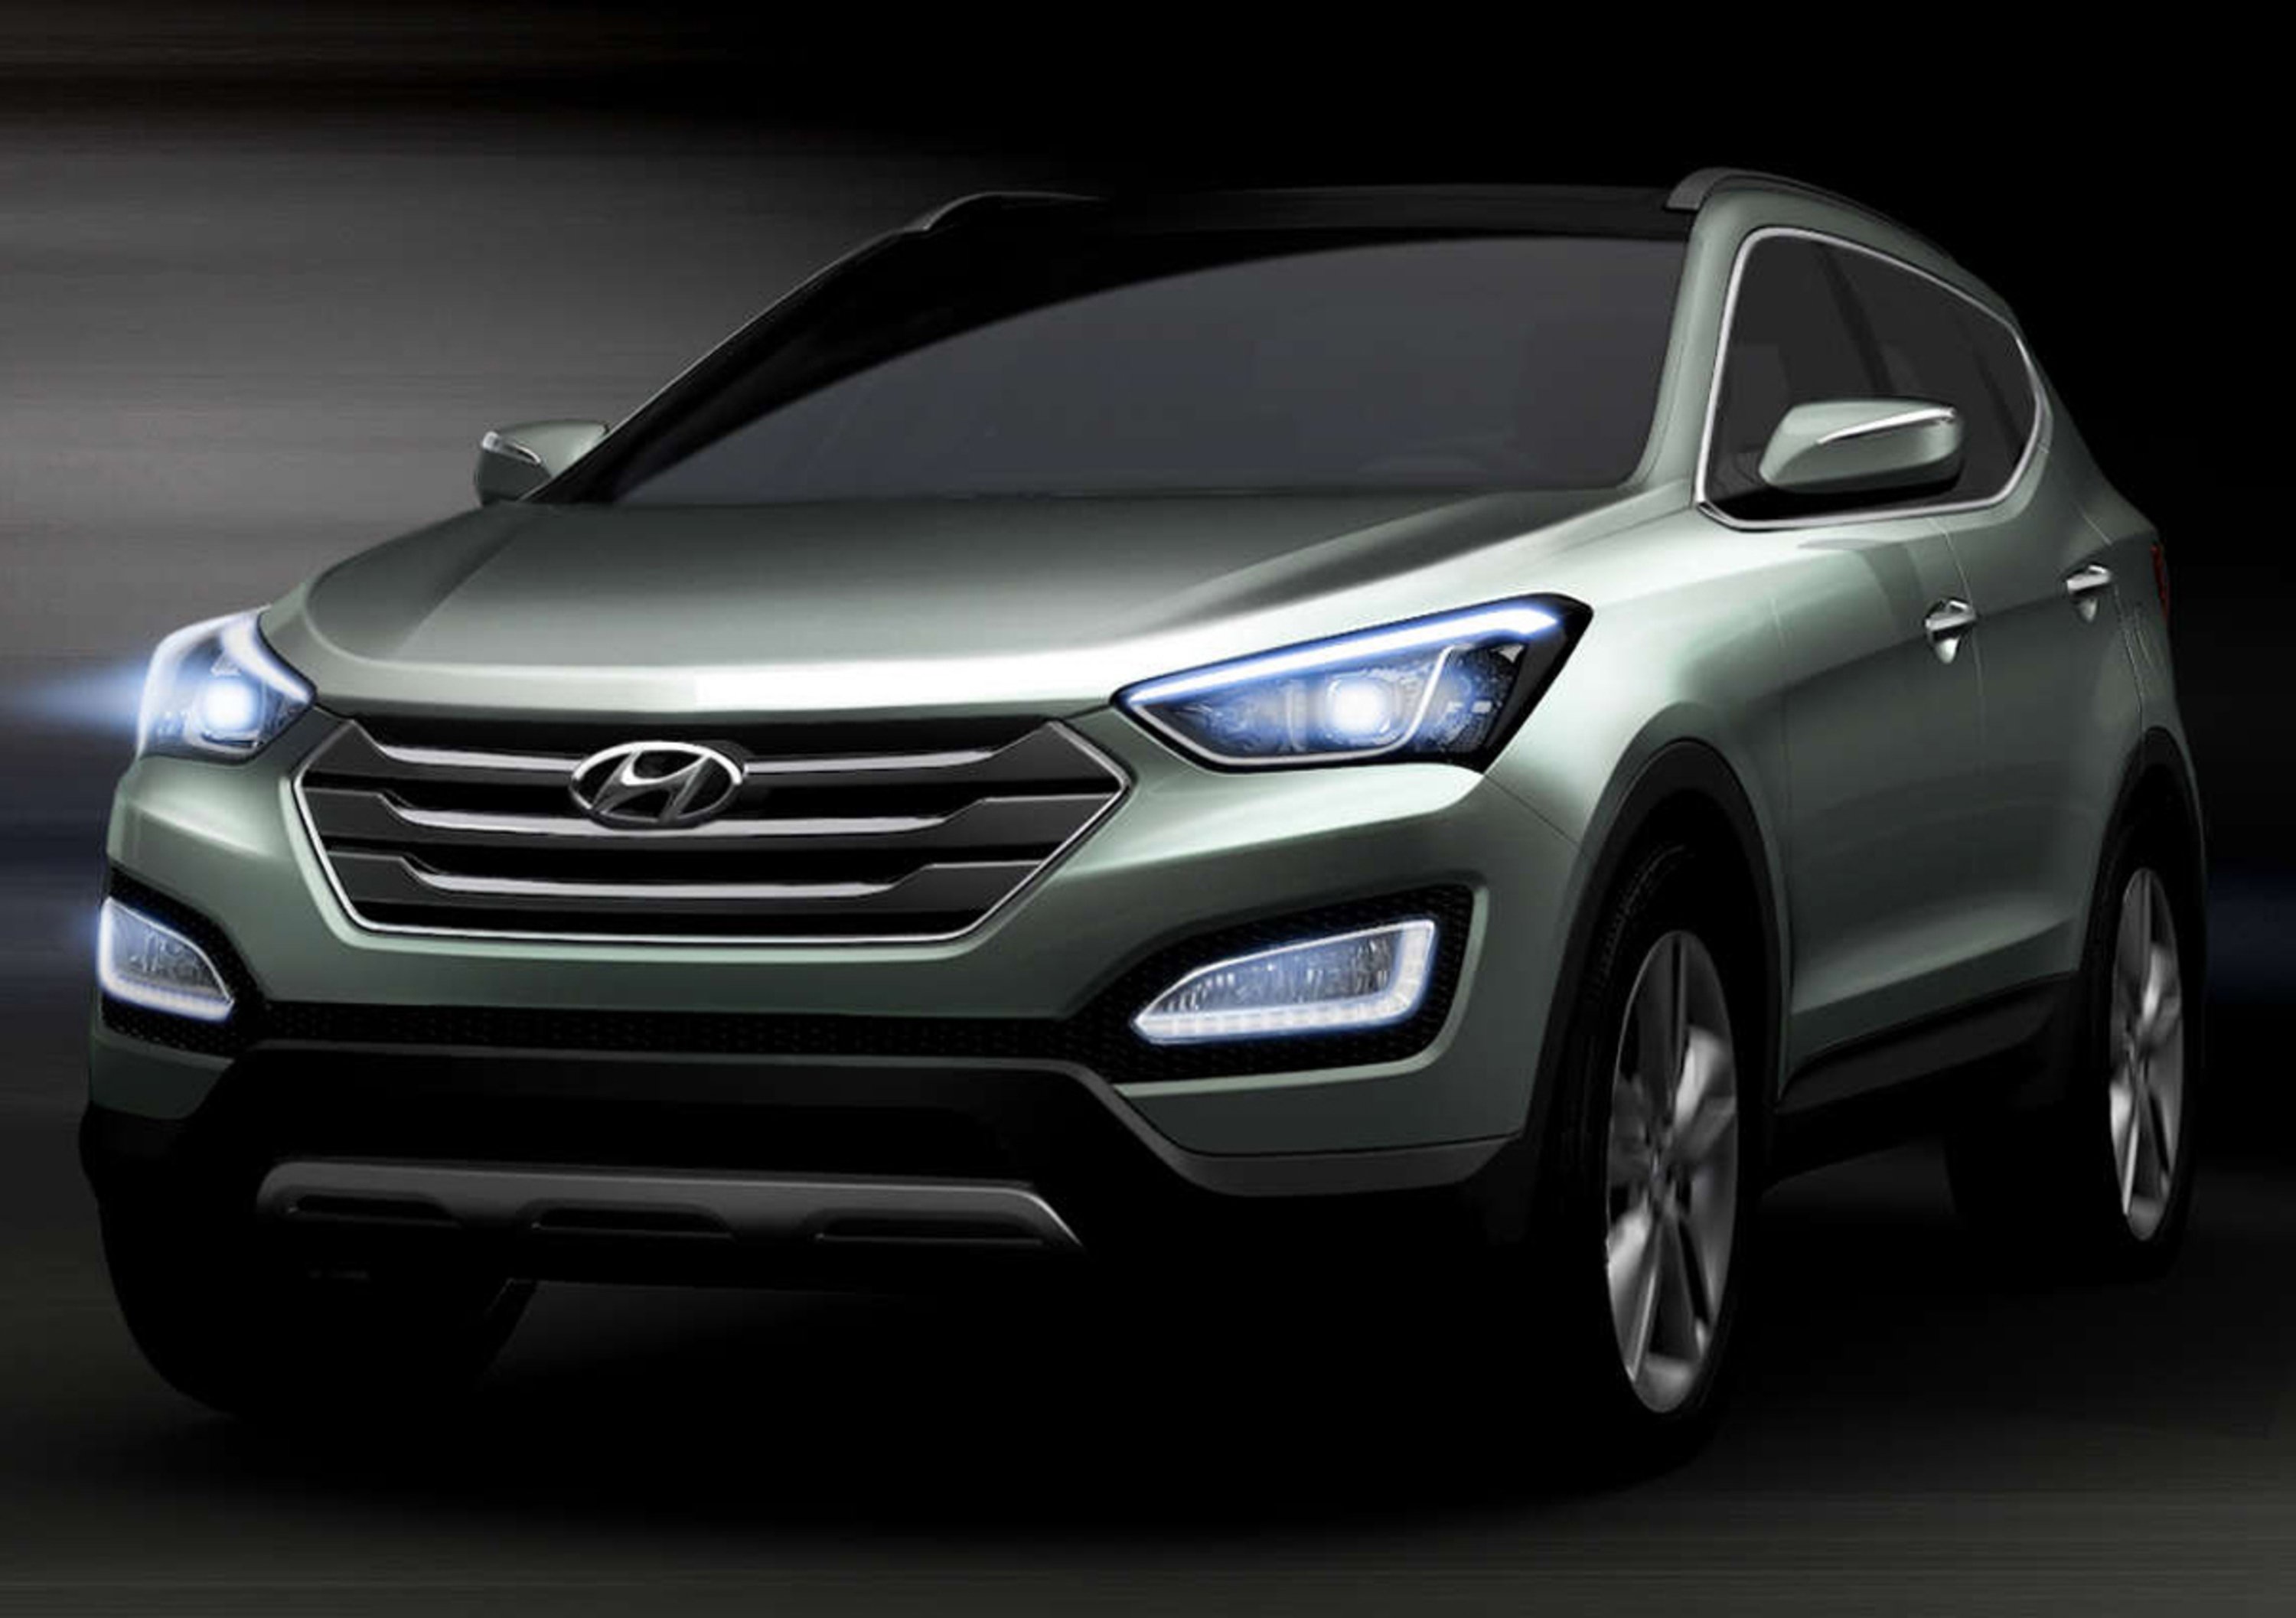 Nuova Hyundai Santa Fe: prime immagini ufficiali